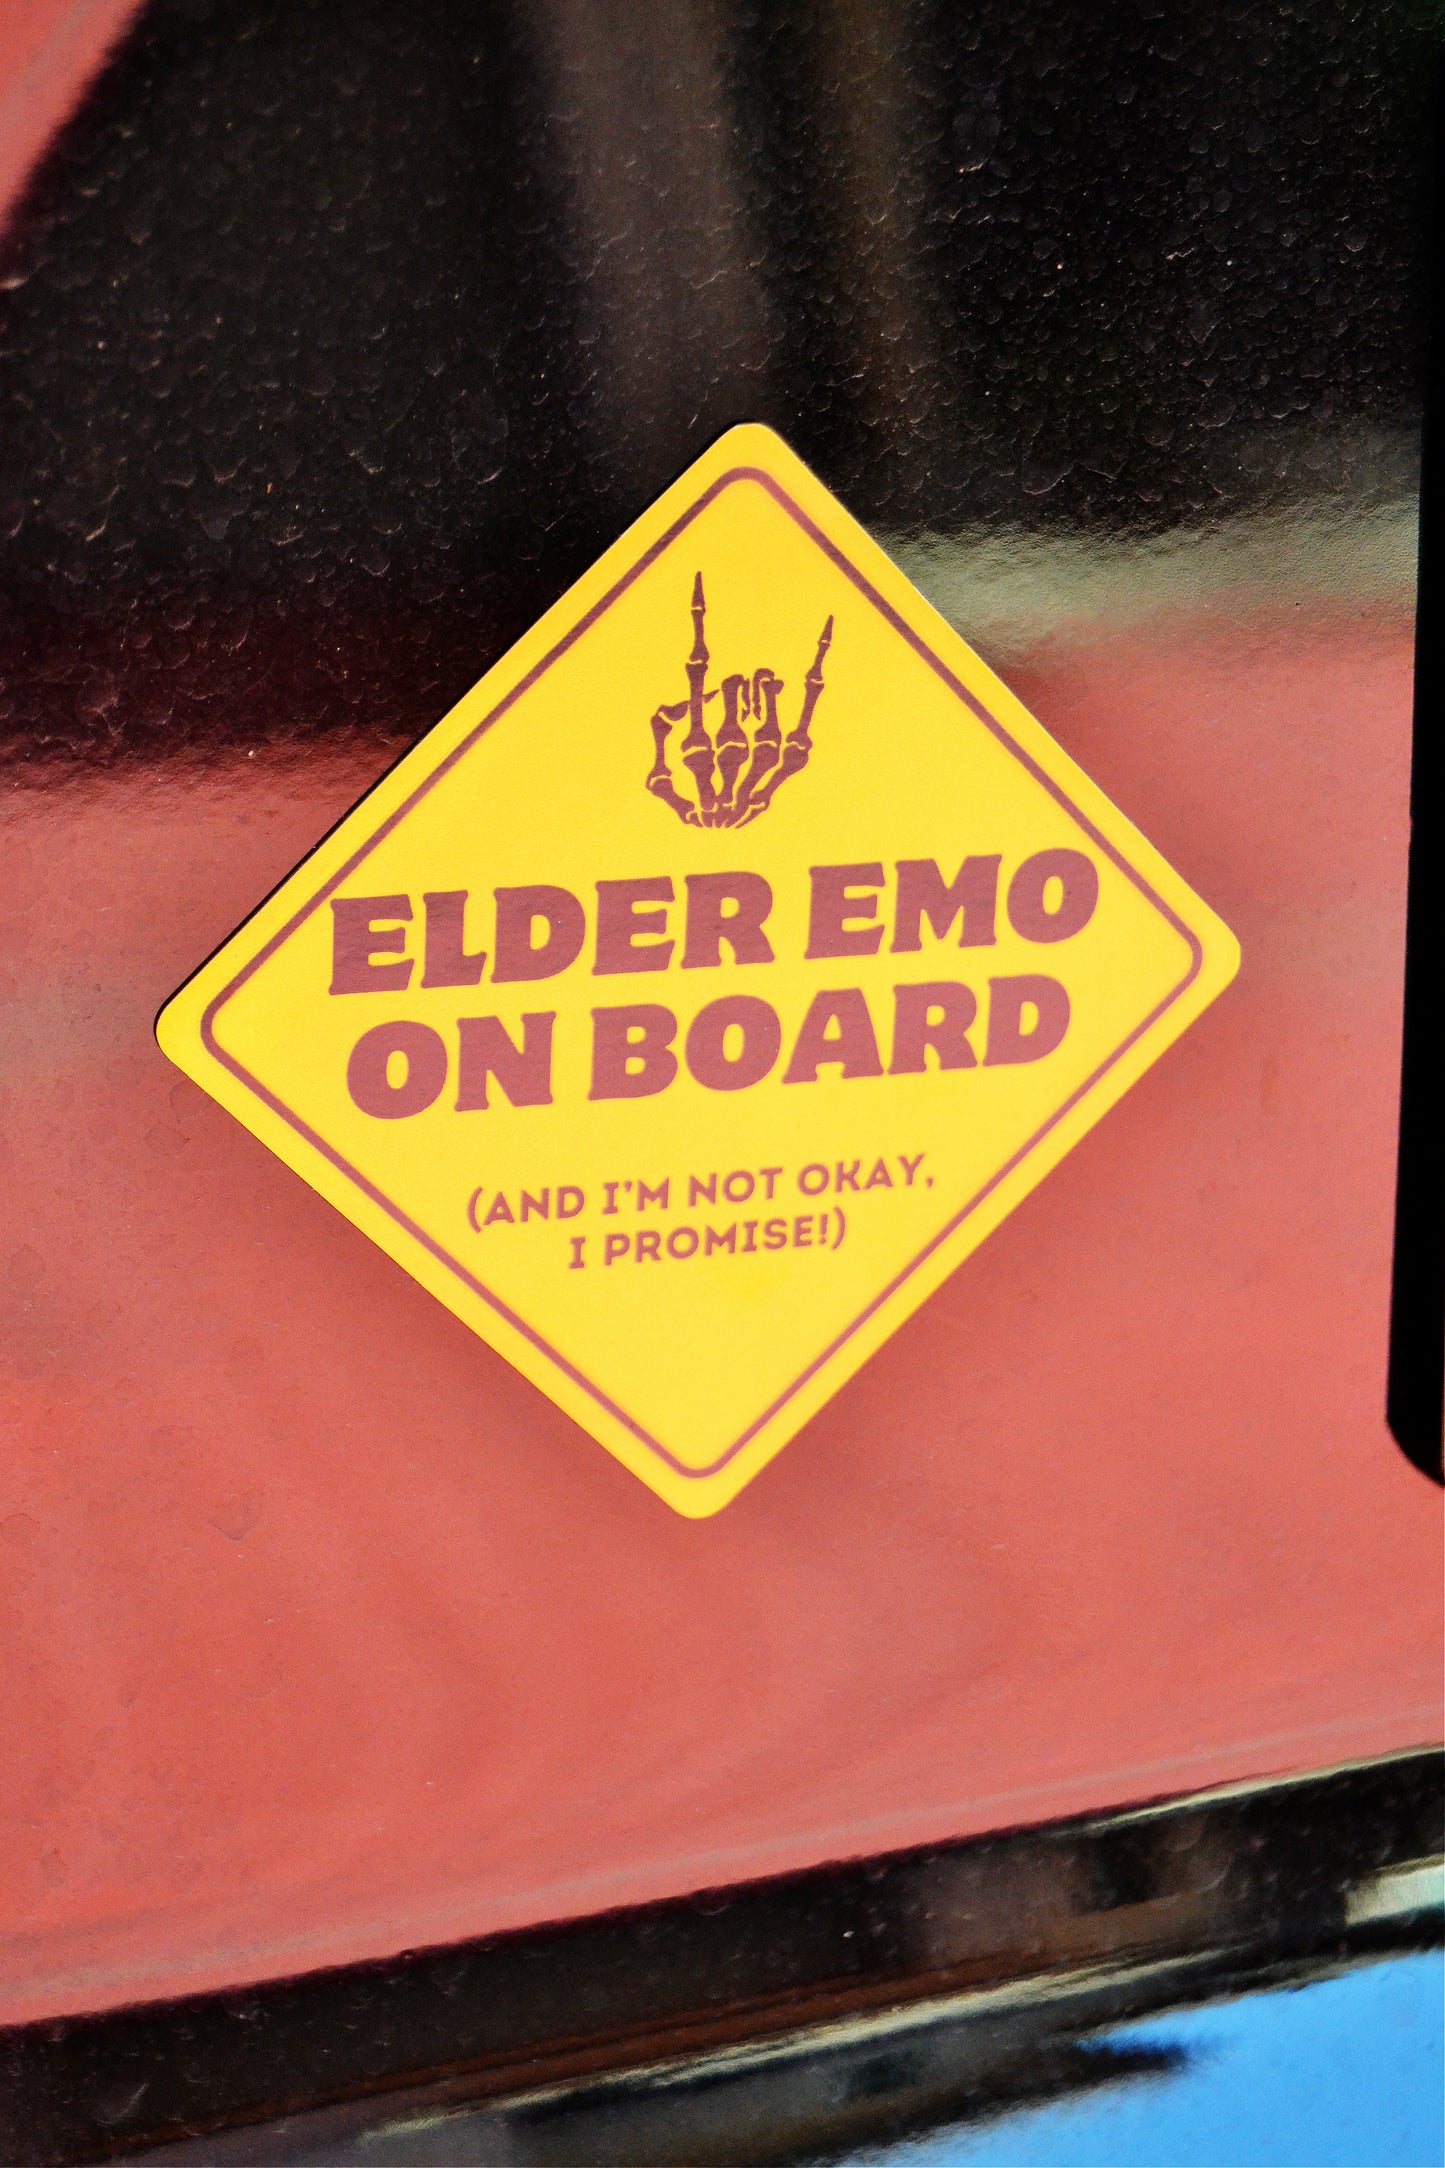 Elder Emo on Board Bumper Magnet